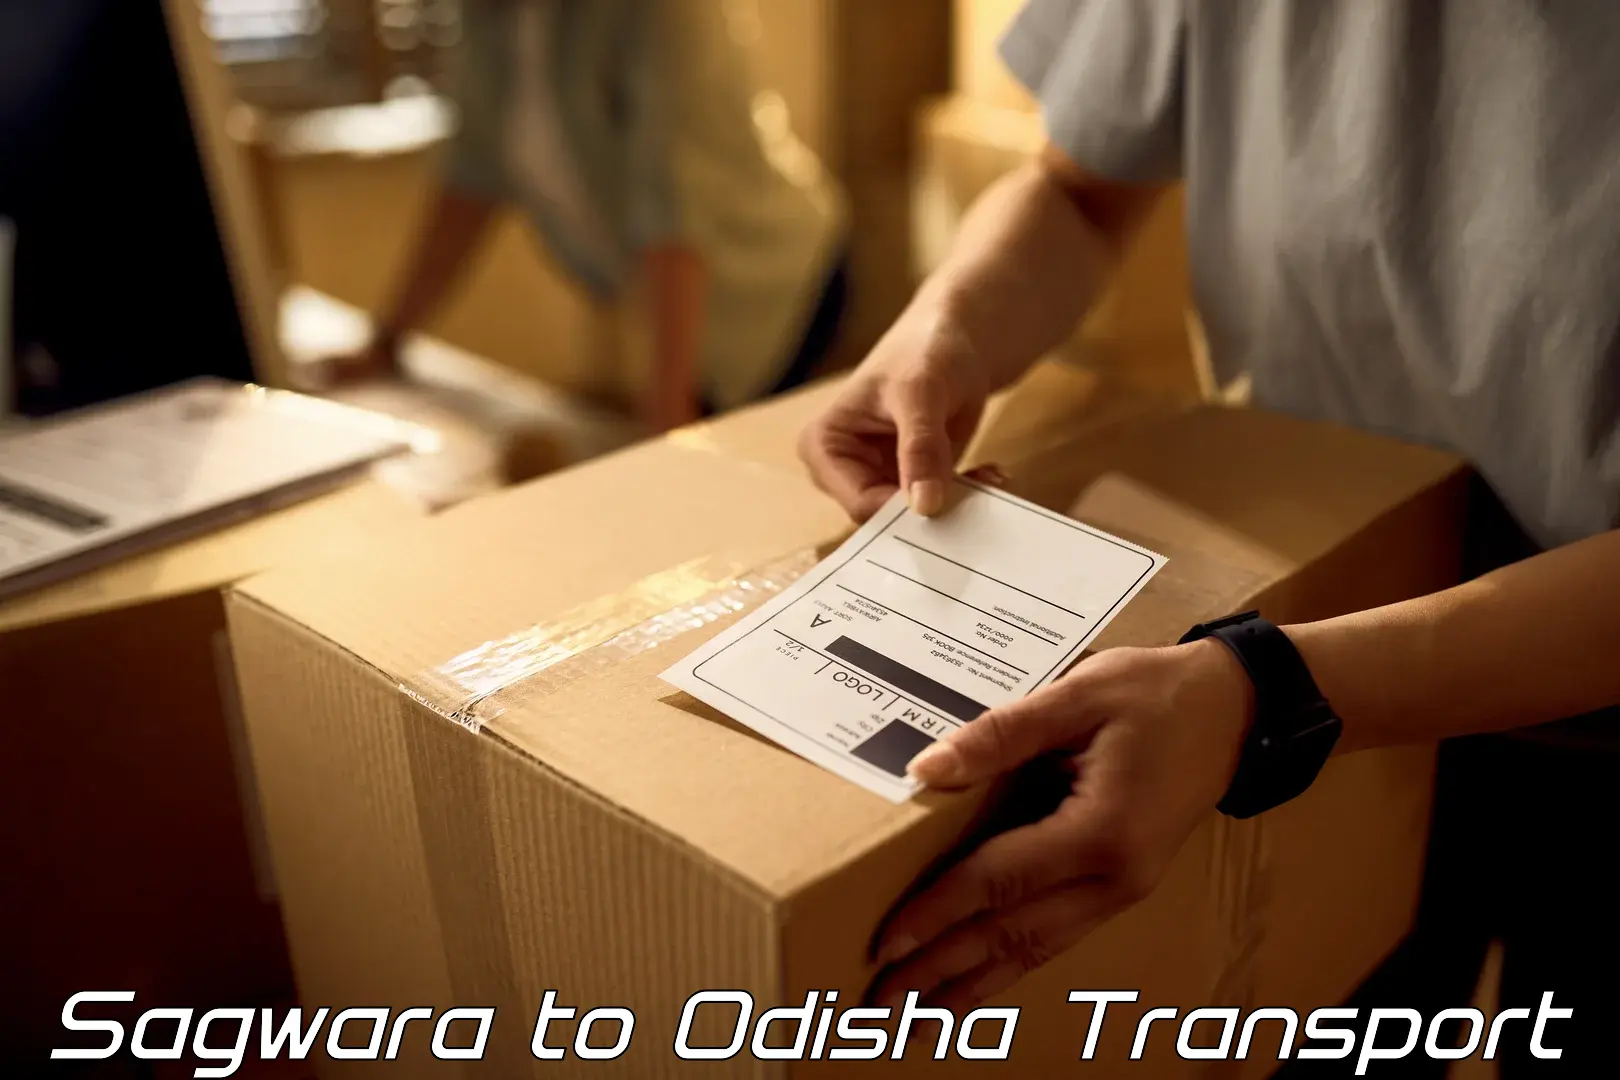 Transport in sharing Sagwara to Joda